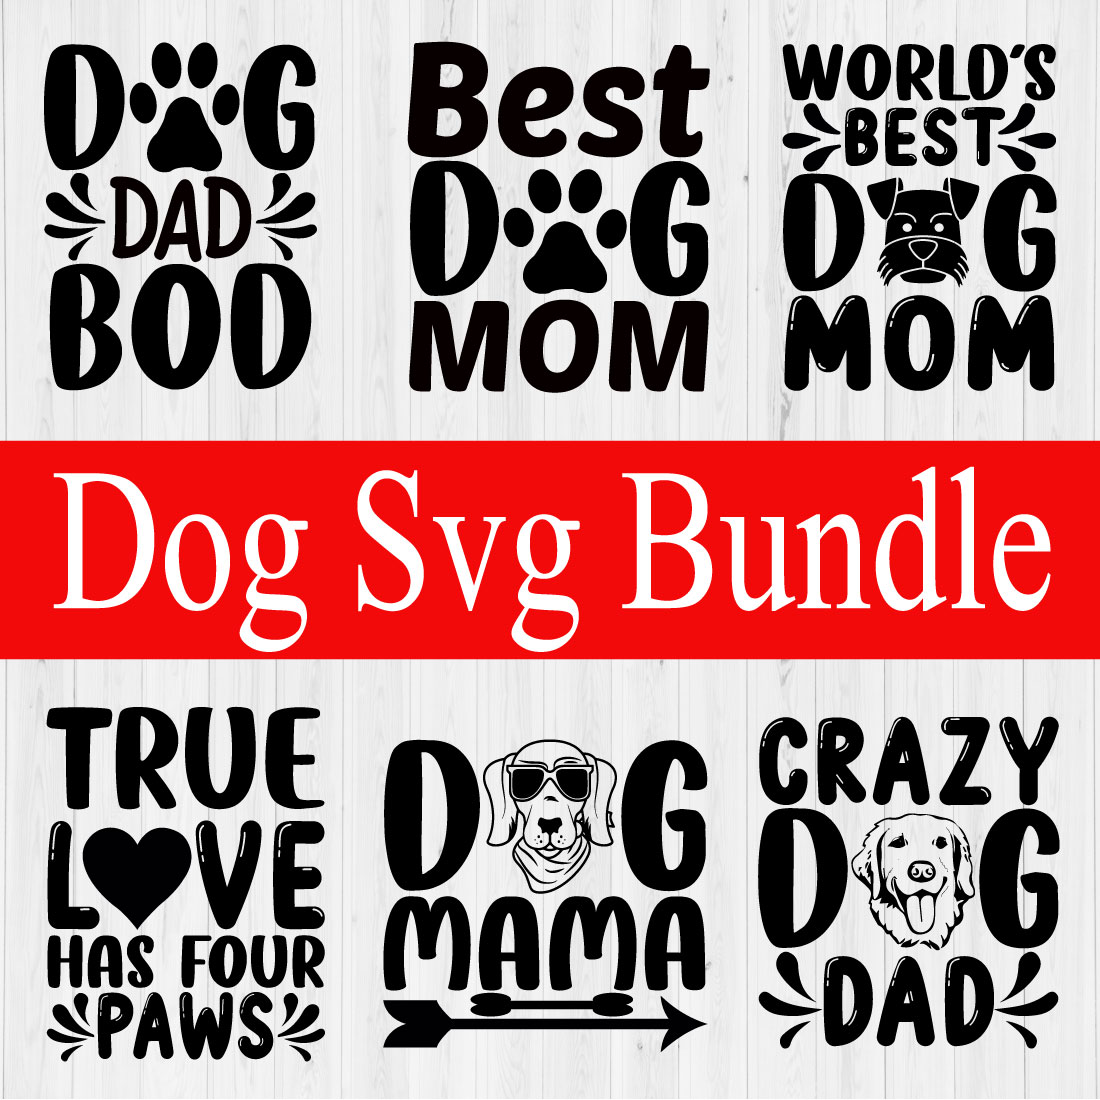 Dog Svg Design Bundle Vol22 cover image.